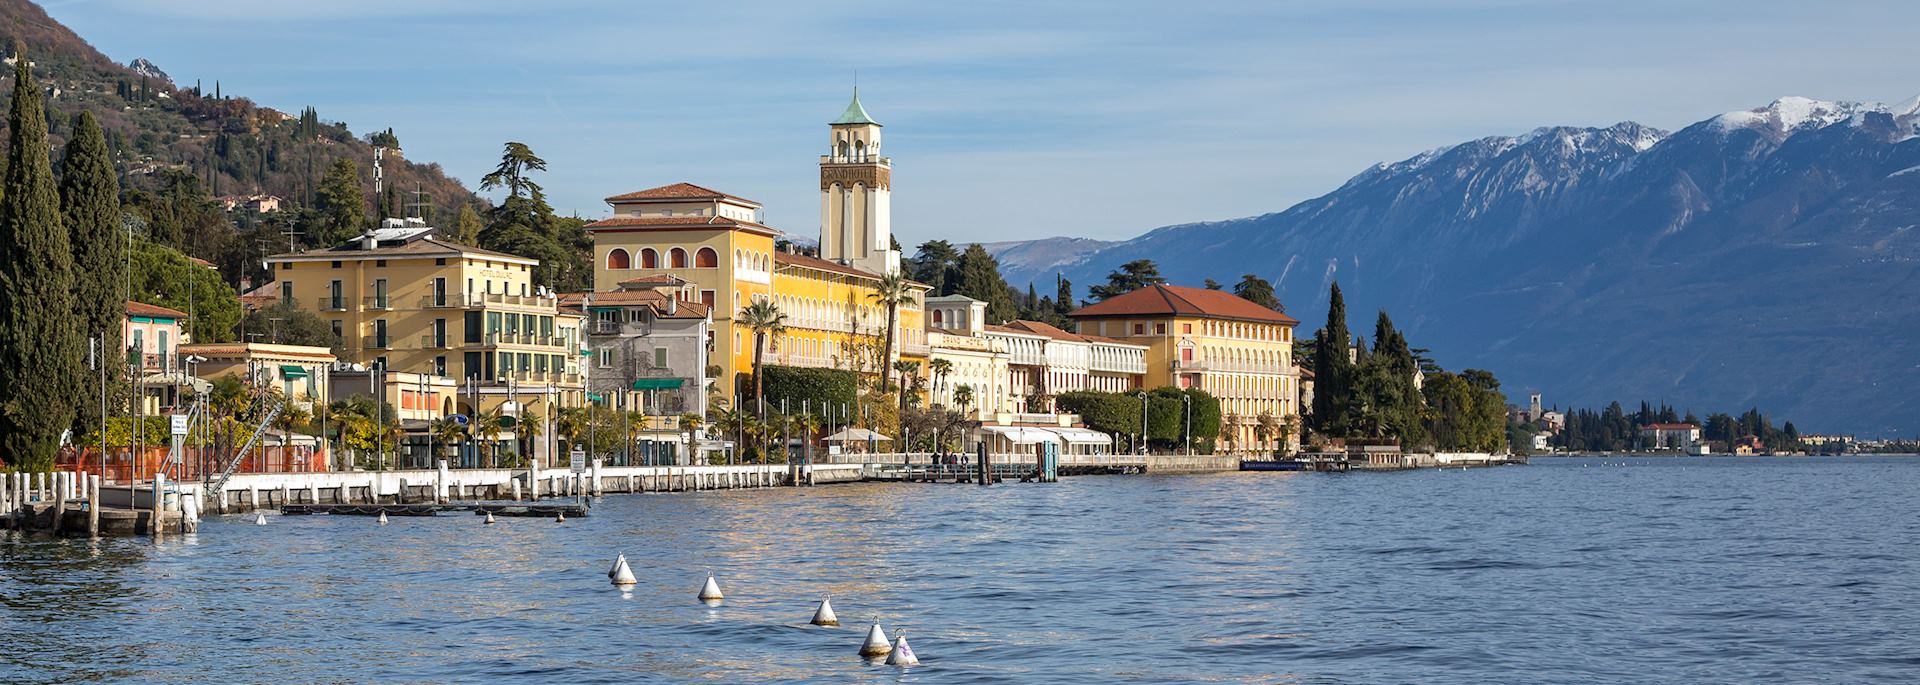 Gardone Riviera, Lake Garda